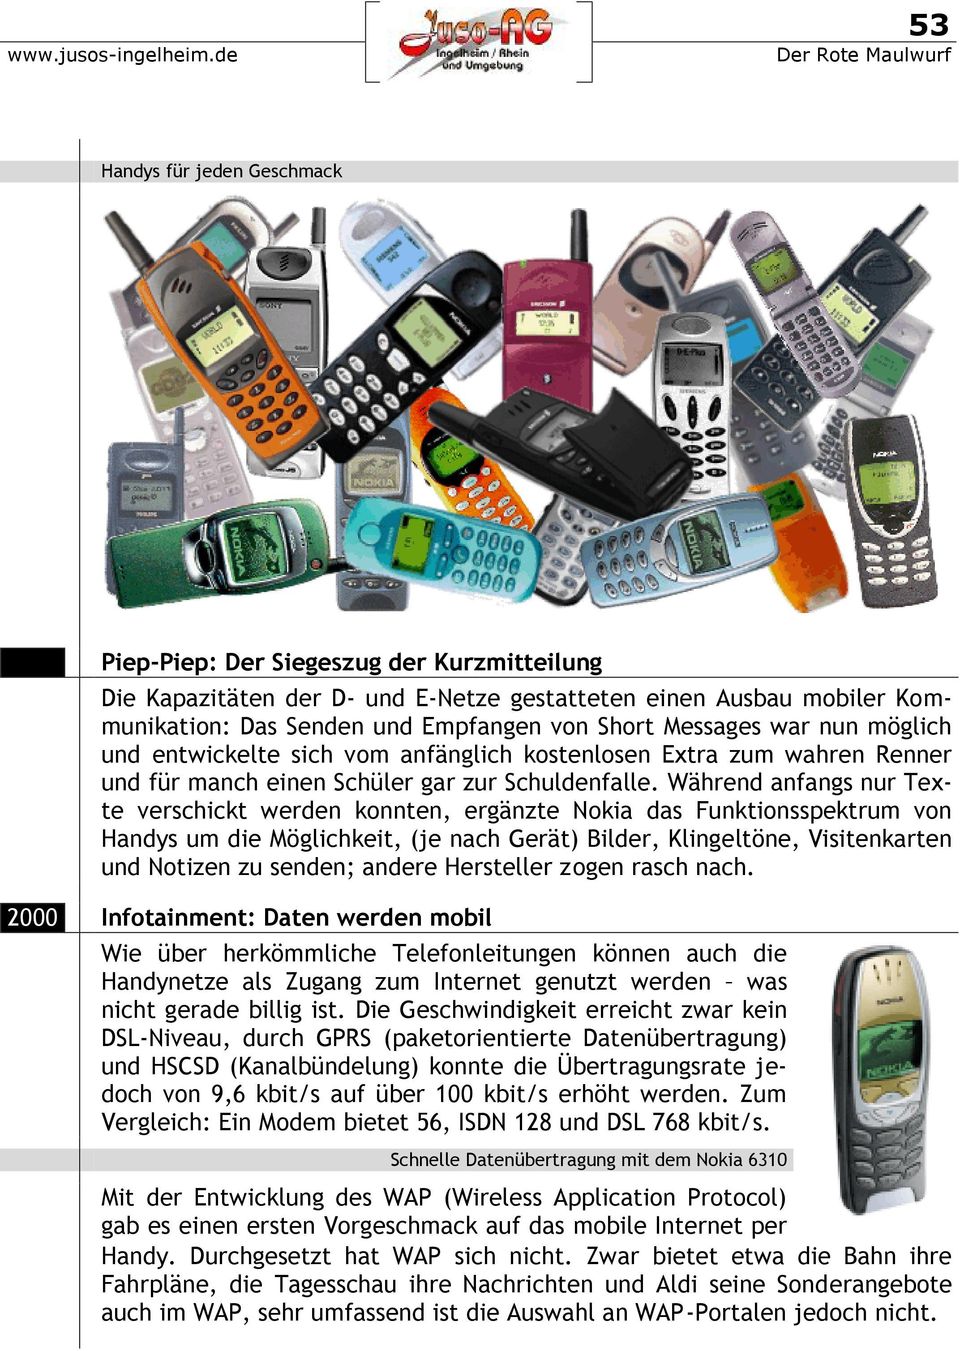 Während anfangs nur Texte verschickt werden konnten, ergänzte Nokia das Funktionsspektrum von Handys um die Möglichkeit, (je nach Gerät) Bilder, Klingeltöne, Visitenkarten und Notizen zu senden;